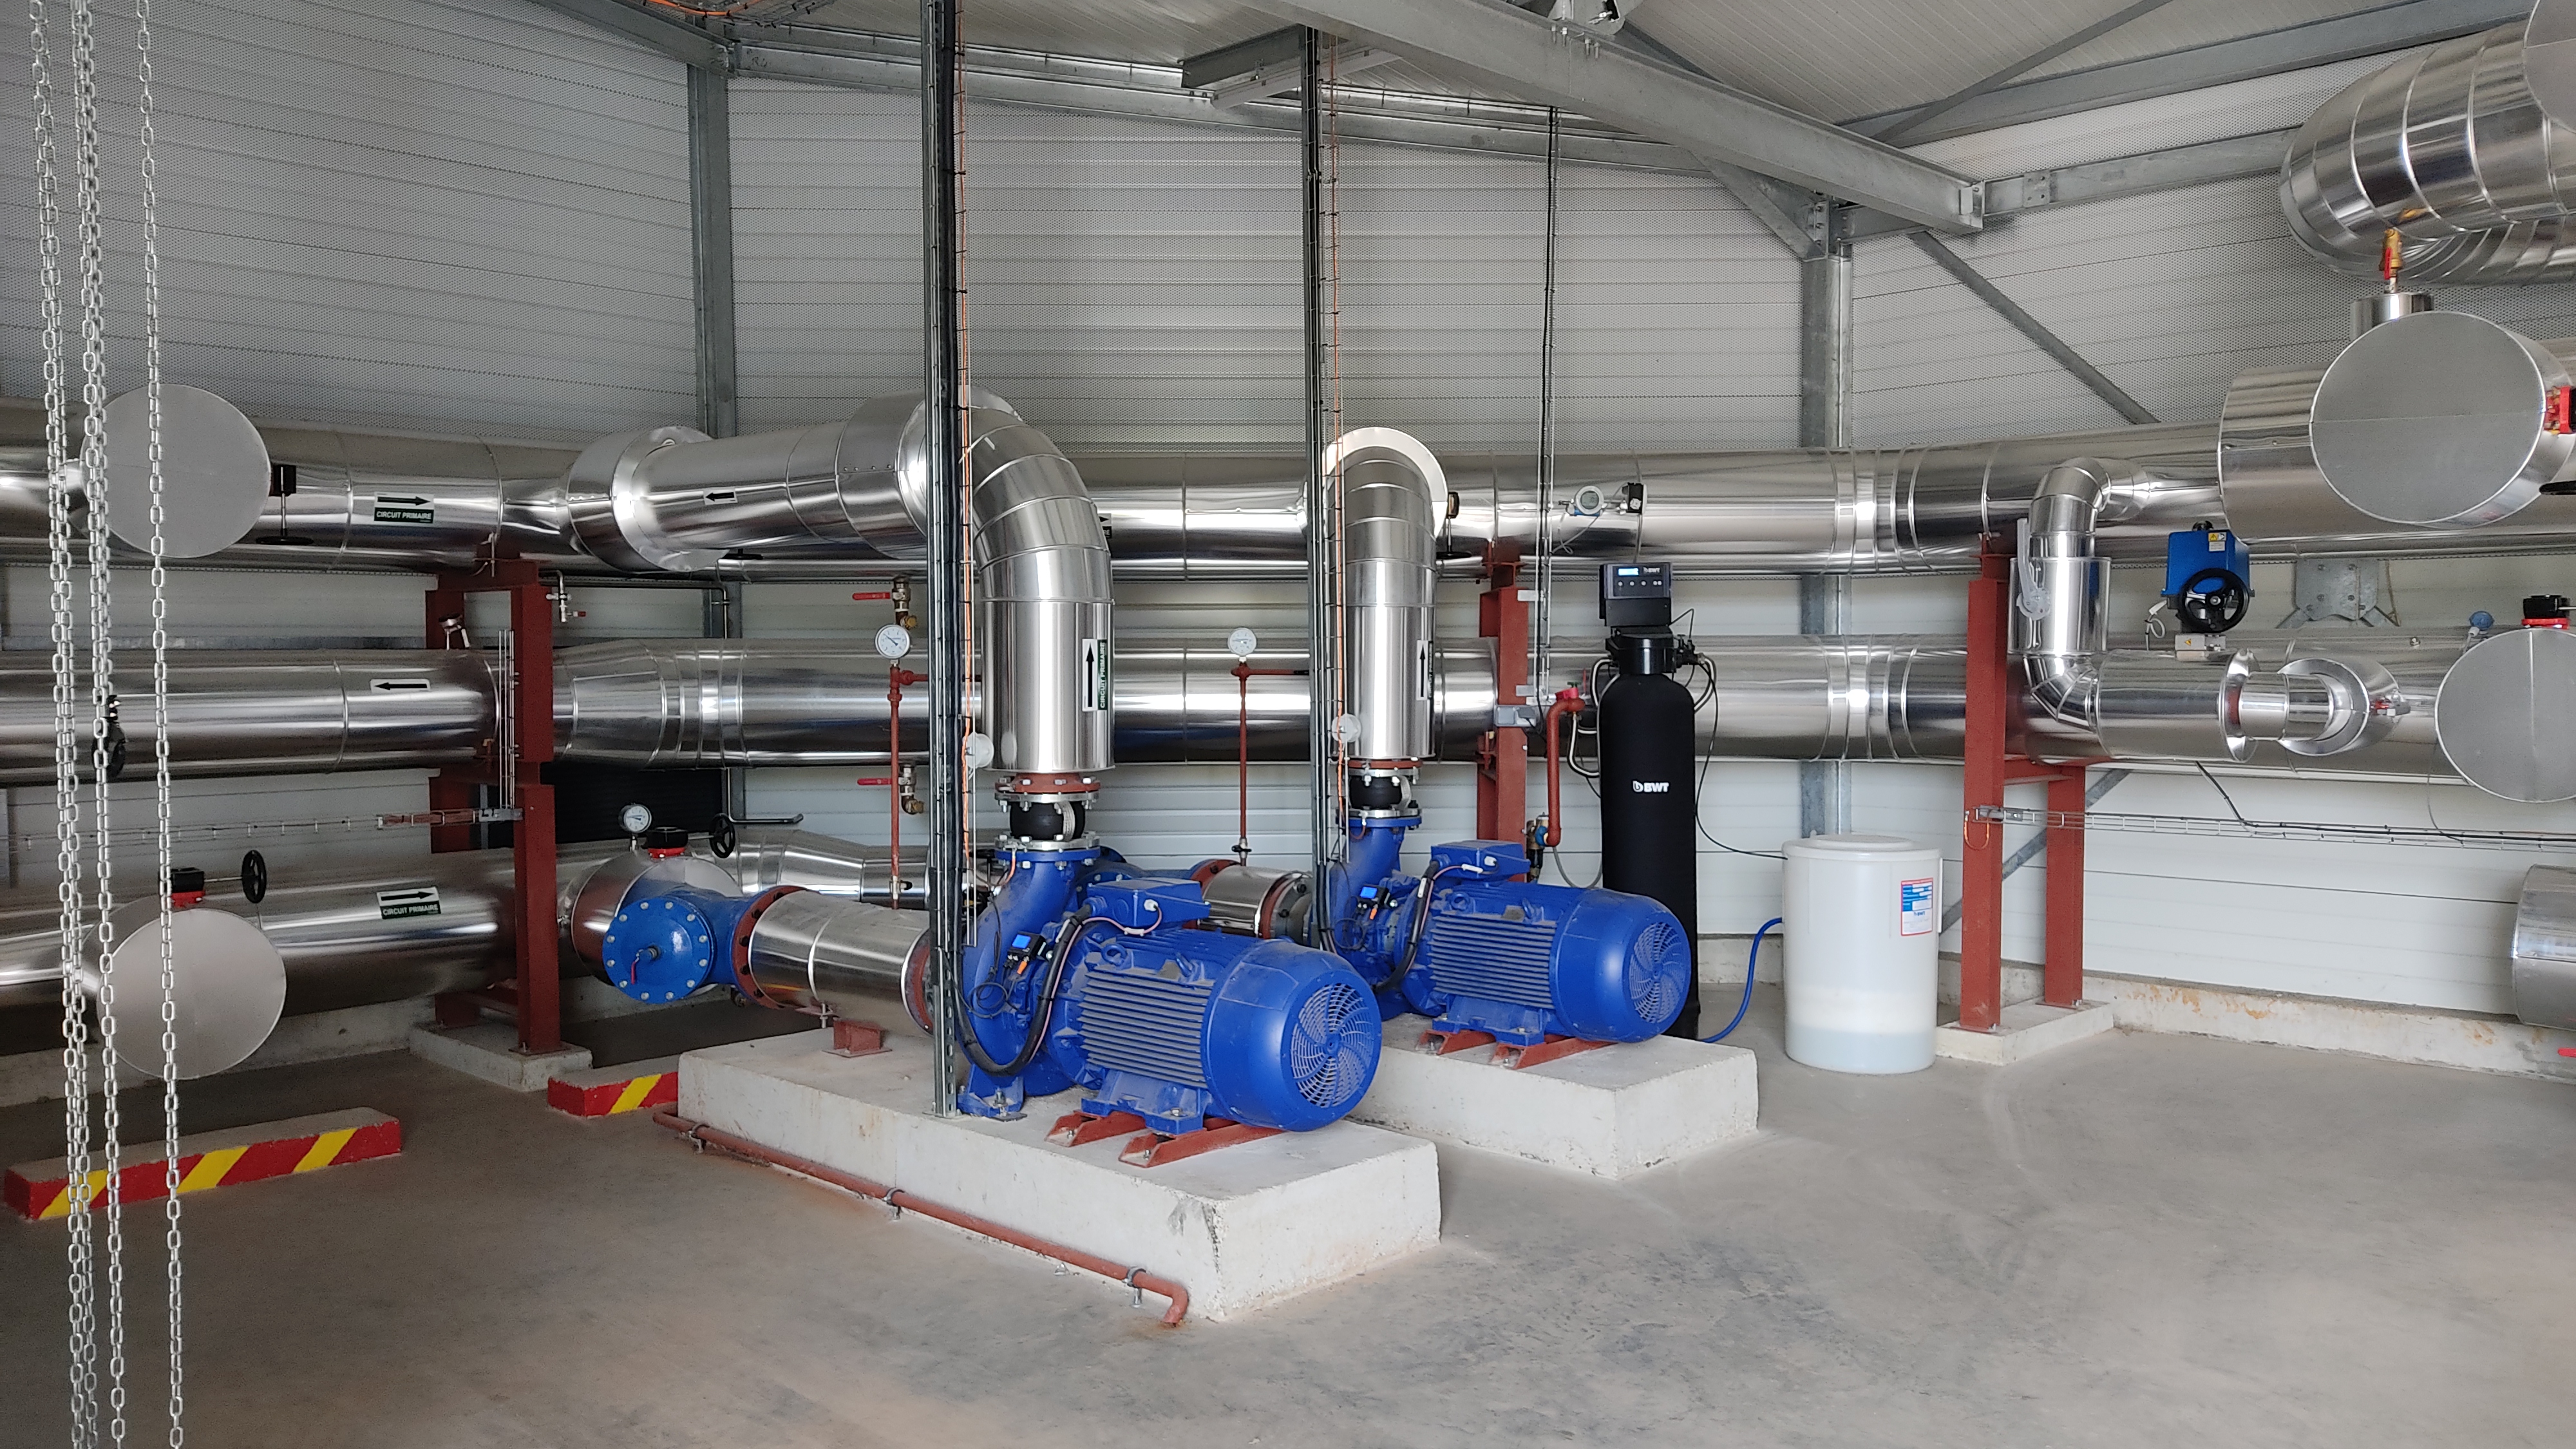 Les hydrocondenseurs permettent de récupérer la chaleur de l'air pour chauffer l'eau qui circulera dans les serres. ©RCF Anjou